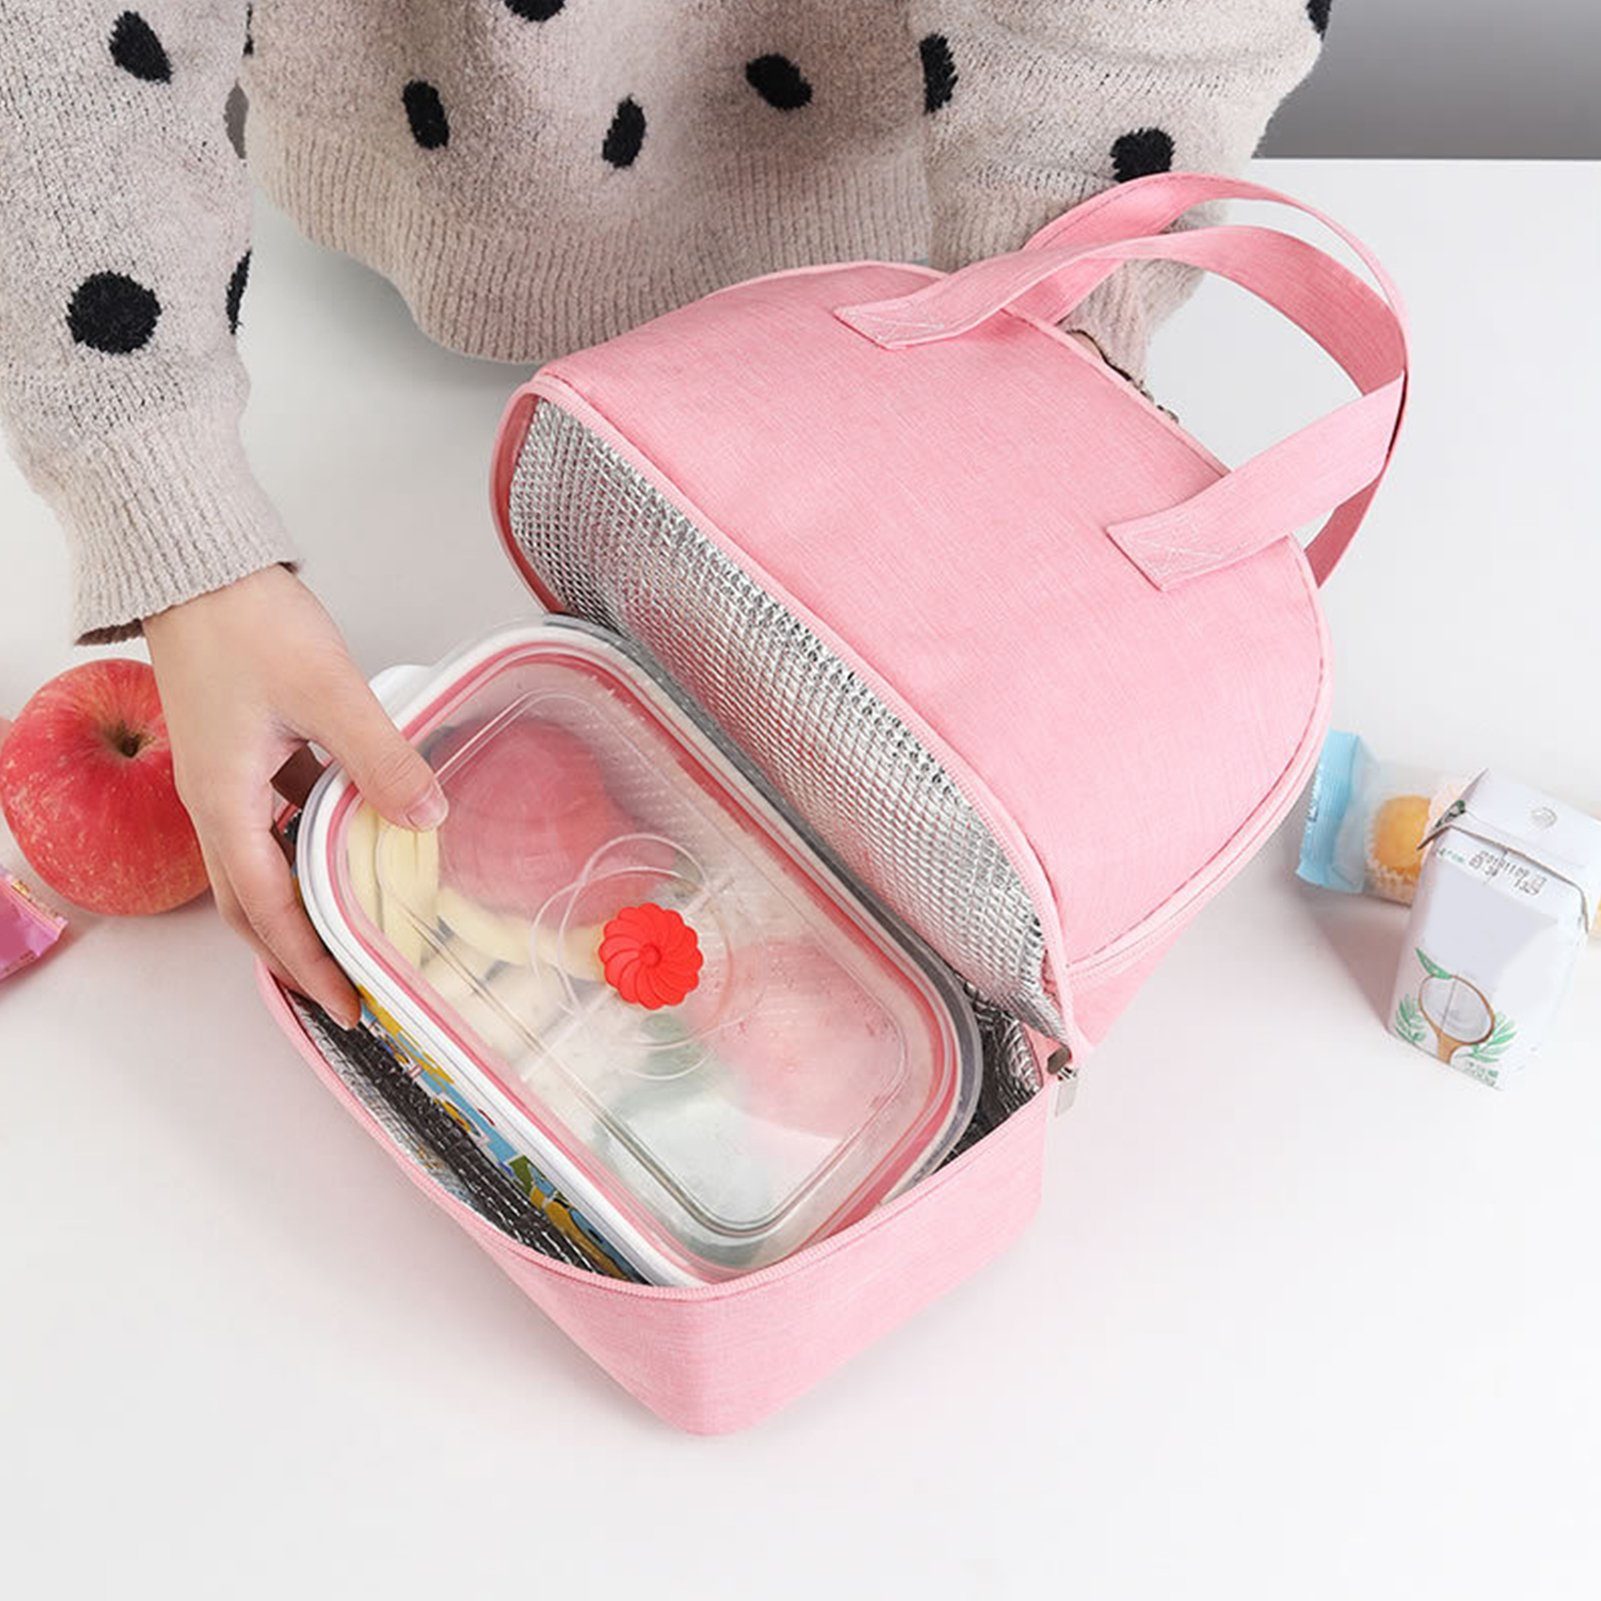 Lunchtasche Popubear Bag Kühltasche Auffangbehälter Lunch für Lunchboxen süße Grau